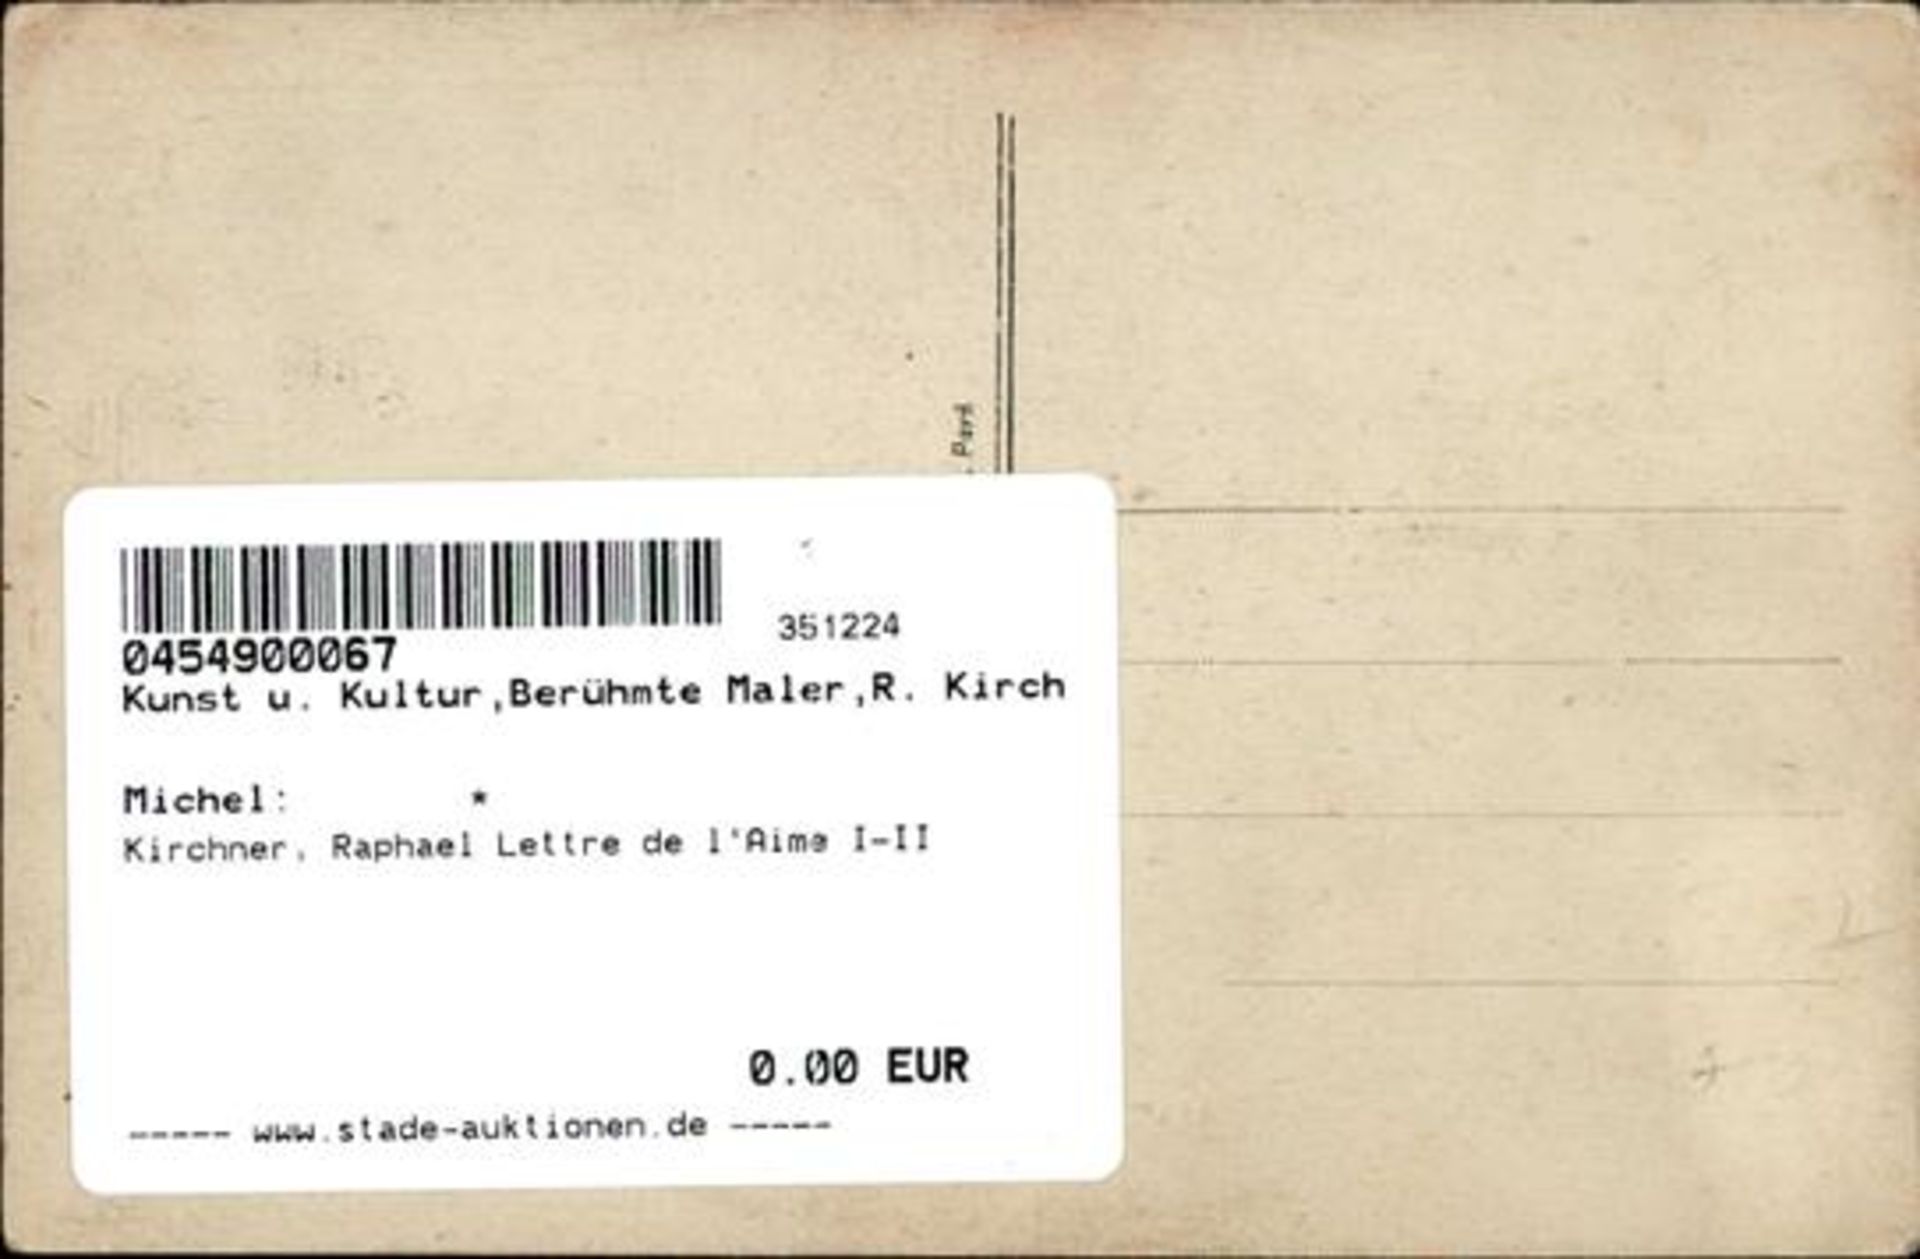 Kirchner, Raphael Lettre de l'Aime I-II - Bild 2 aus 2